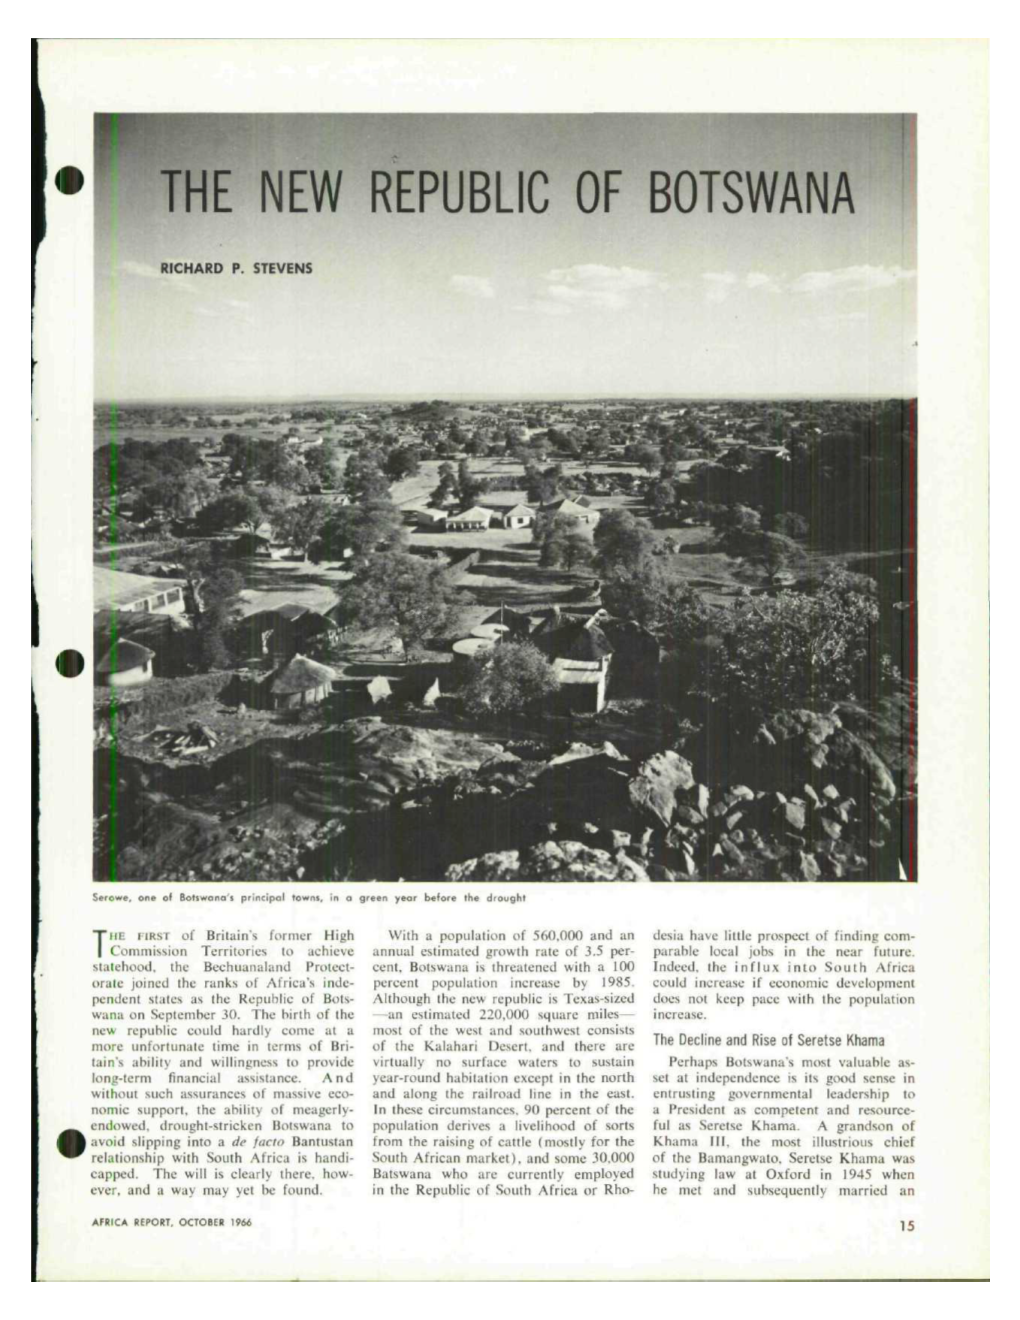 The New Republic of Botswana